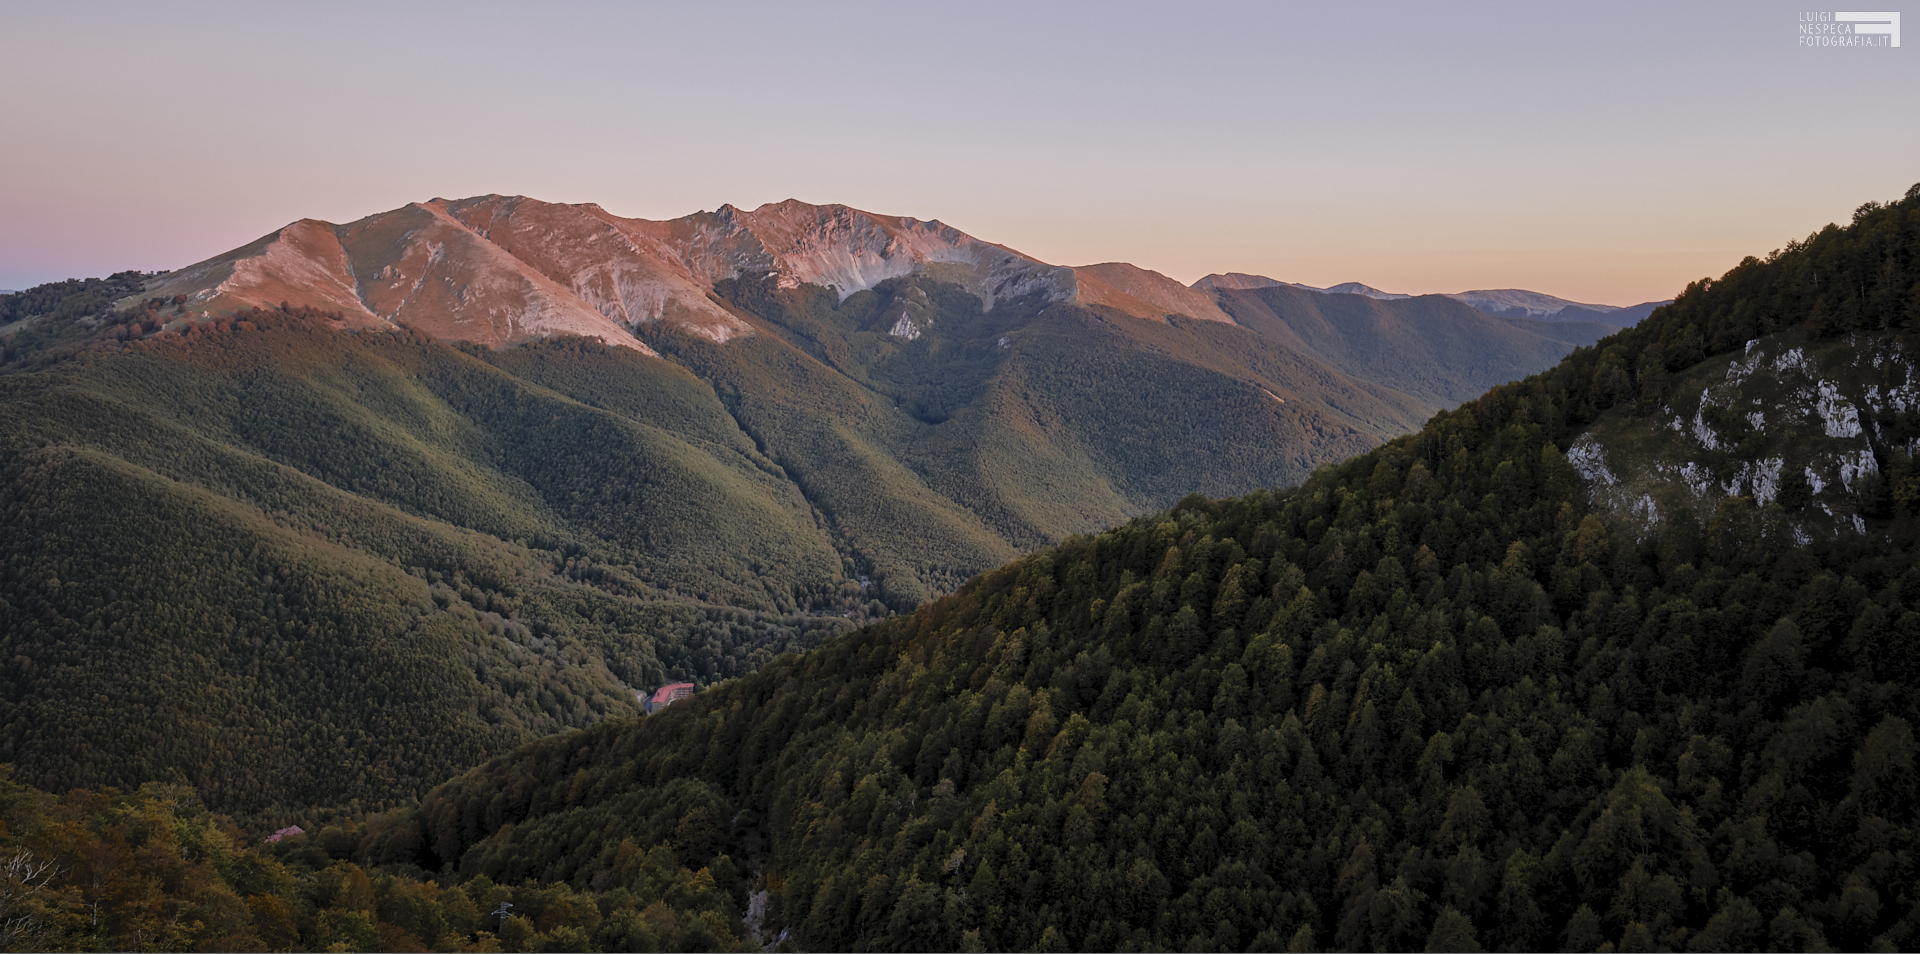 Ottobre 2020 - Il Monte Viglio da Campo Saffi - Monti Simbruni - Cantari